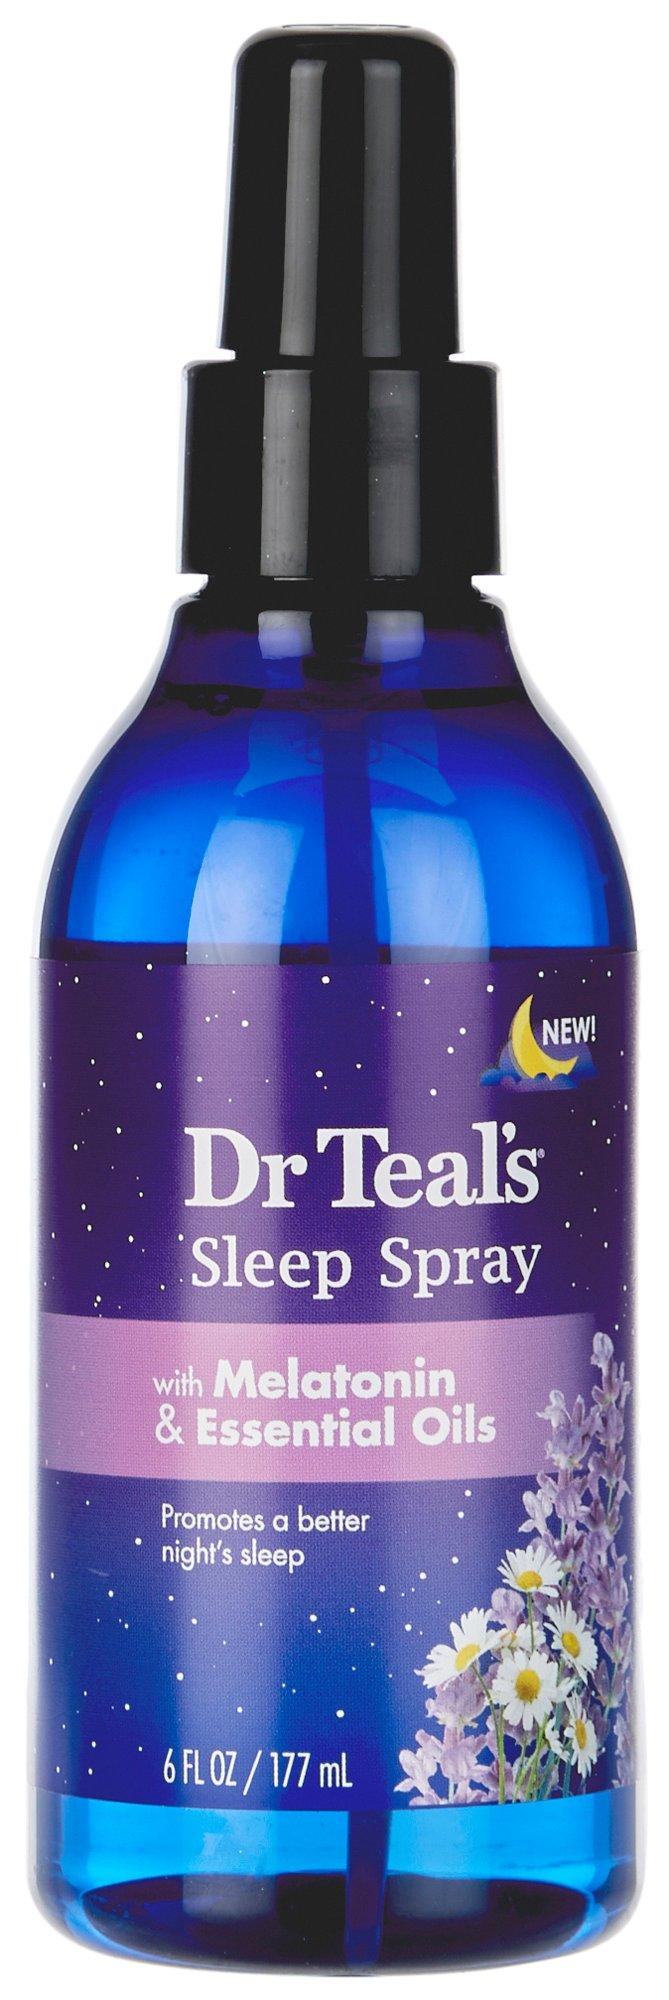 6 Fl.Oz. Melatonin Essential Oils Sleep Spray